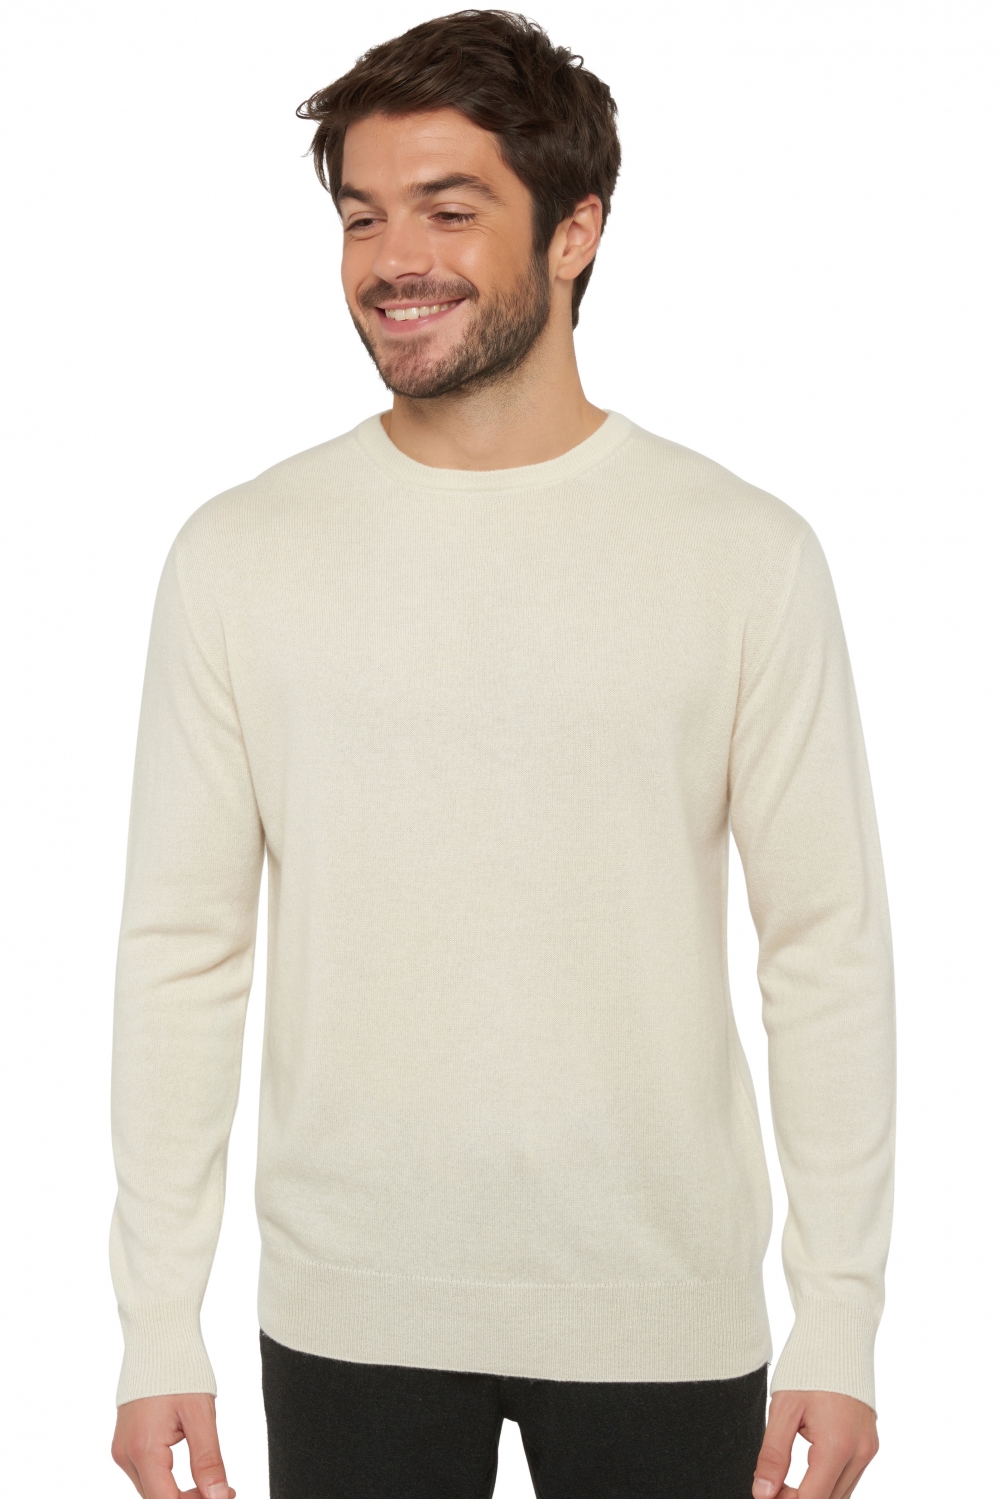 Cashmere men premium sweaters nestor premium tenzin natural l